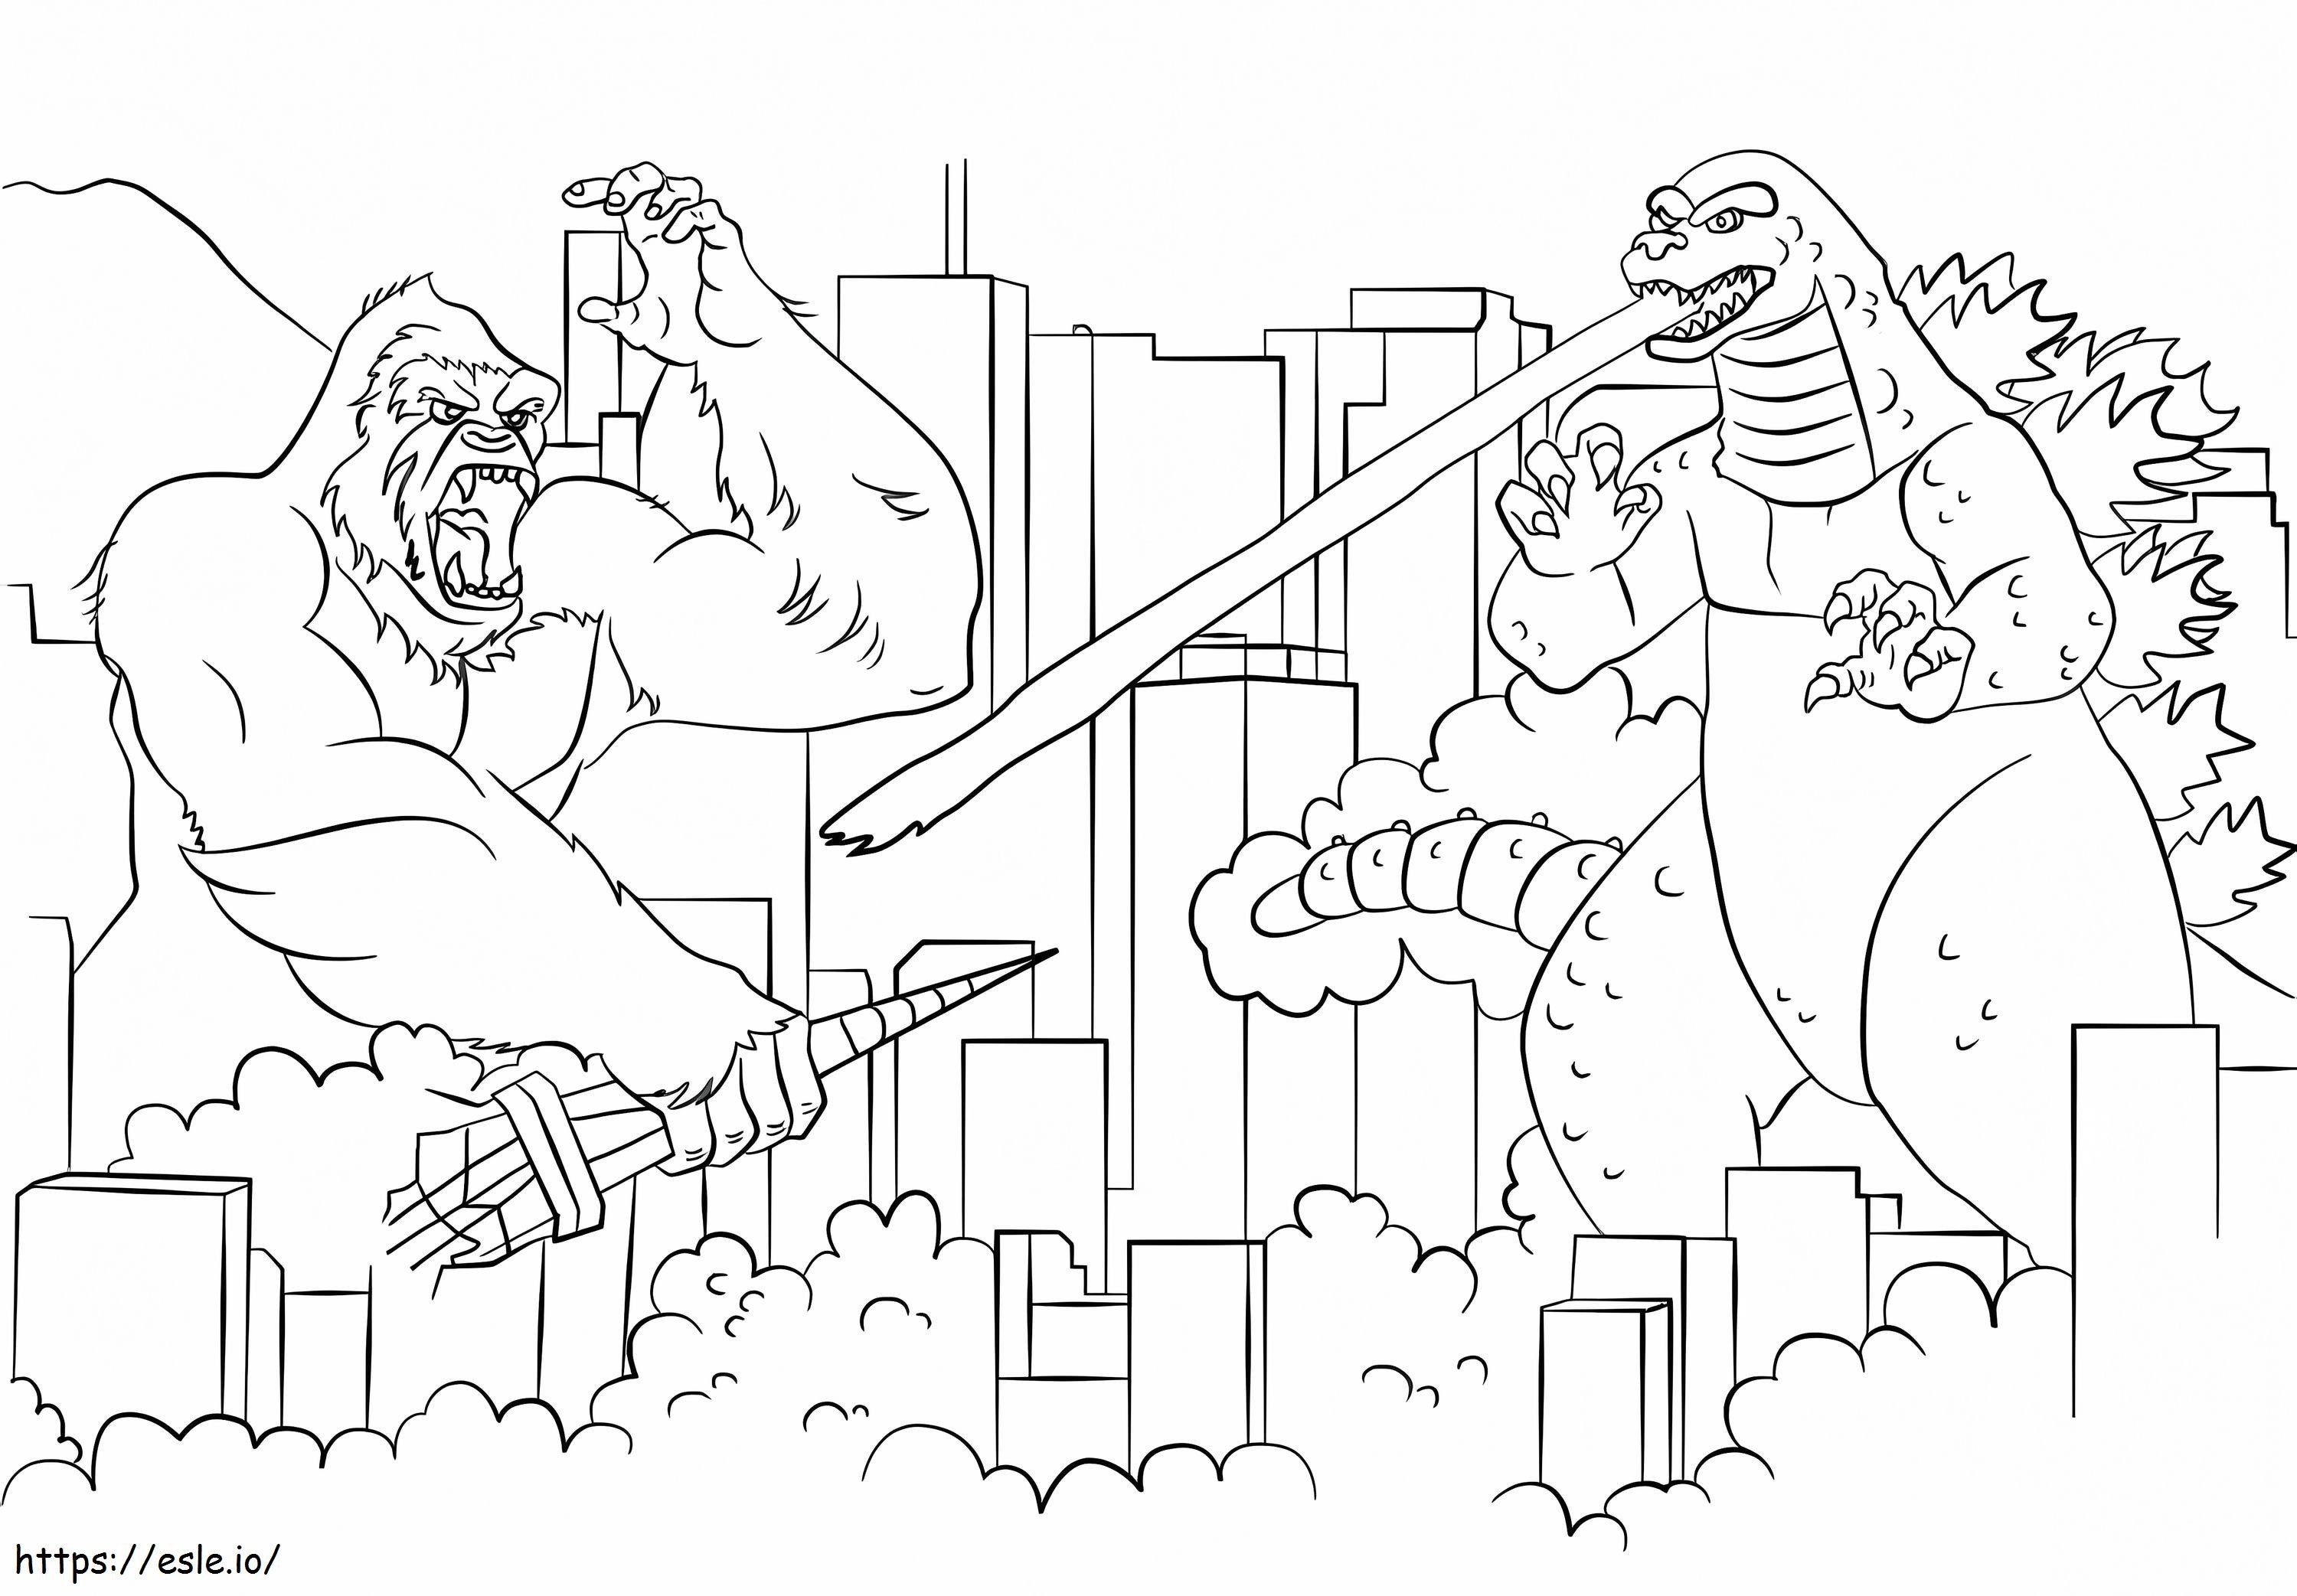 Godzilla kontra King Kong W Mieście kolorowanka